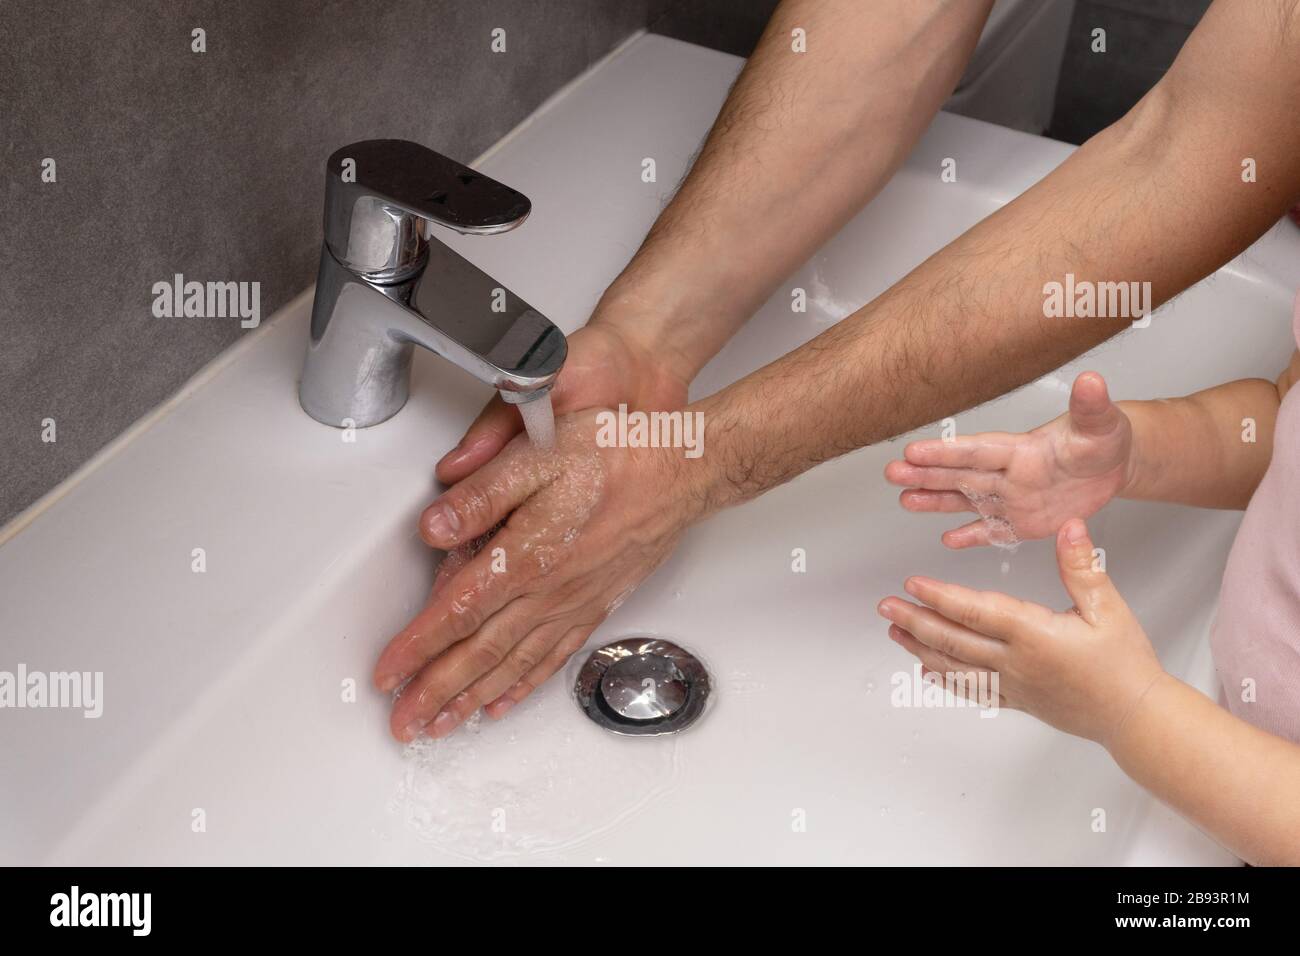 Padre insegna al bambino come lavarsi le mani correttamente Foto Stock